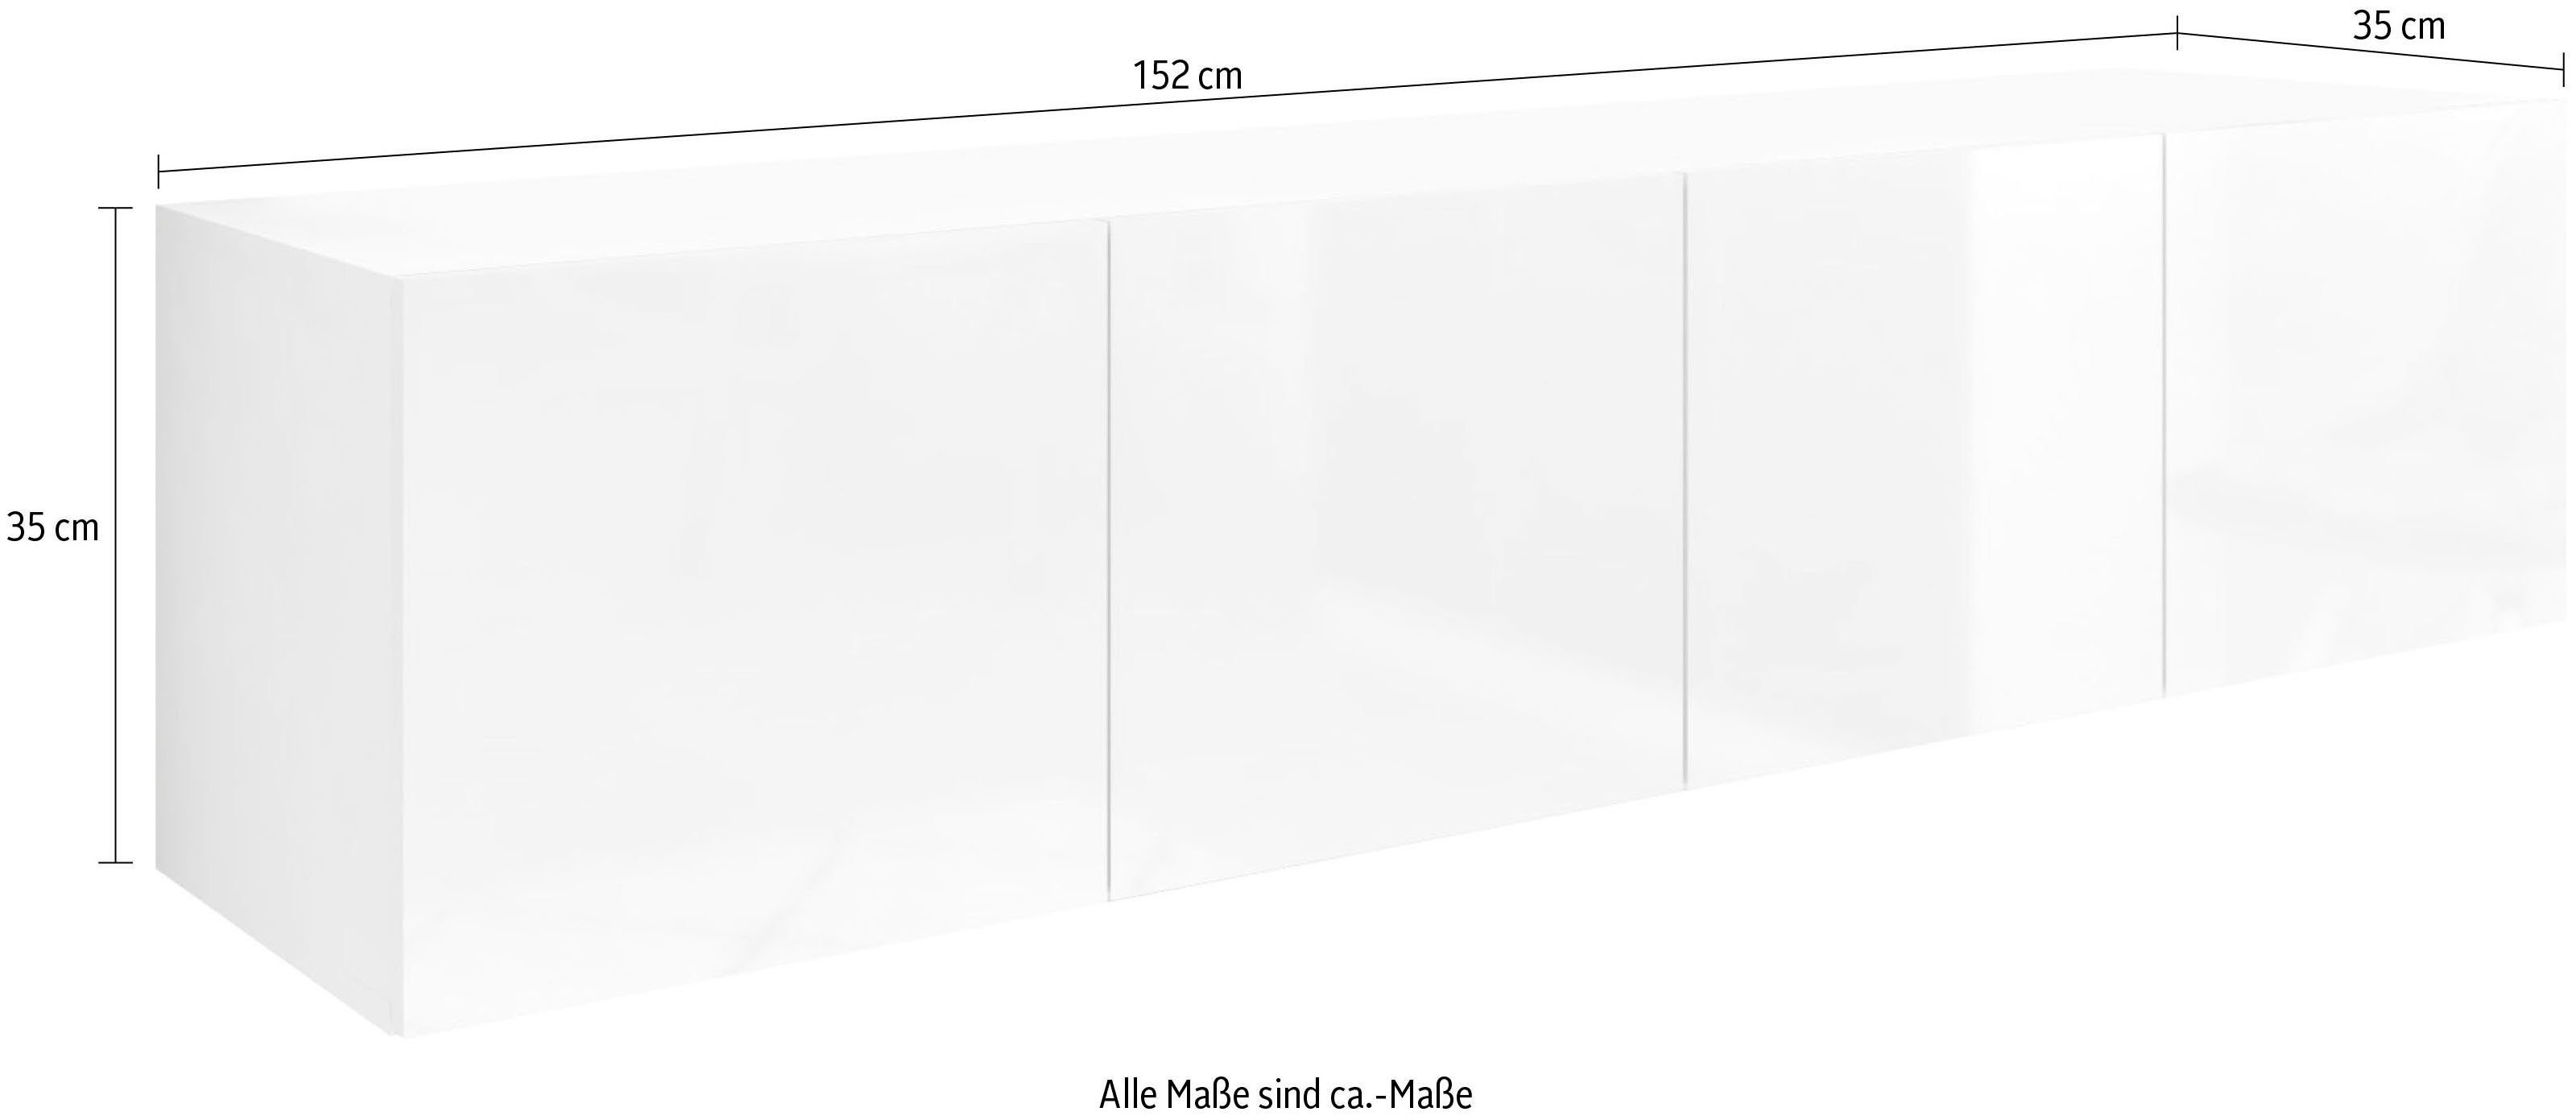 Lowboard matt/graphit Hochglanz Vaasa, hängend weiß 152 borchardt nur cm, Möbel Breite